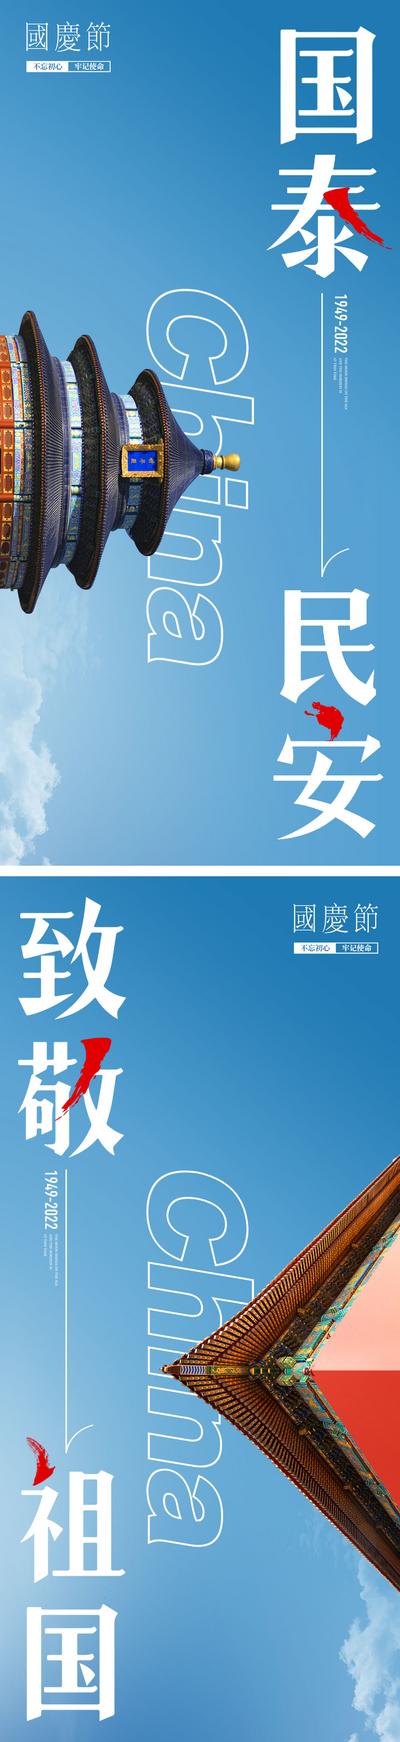 南门网 国庆节海报